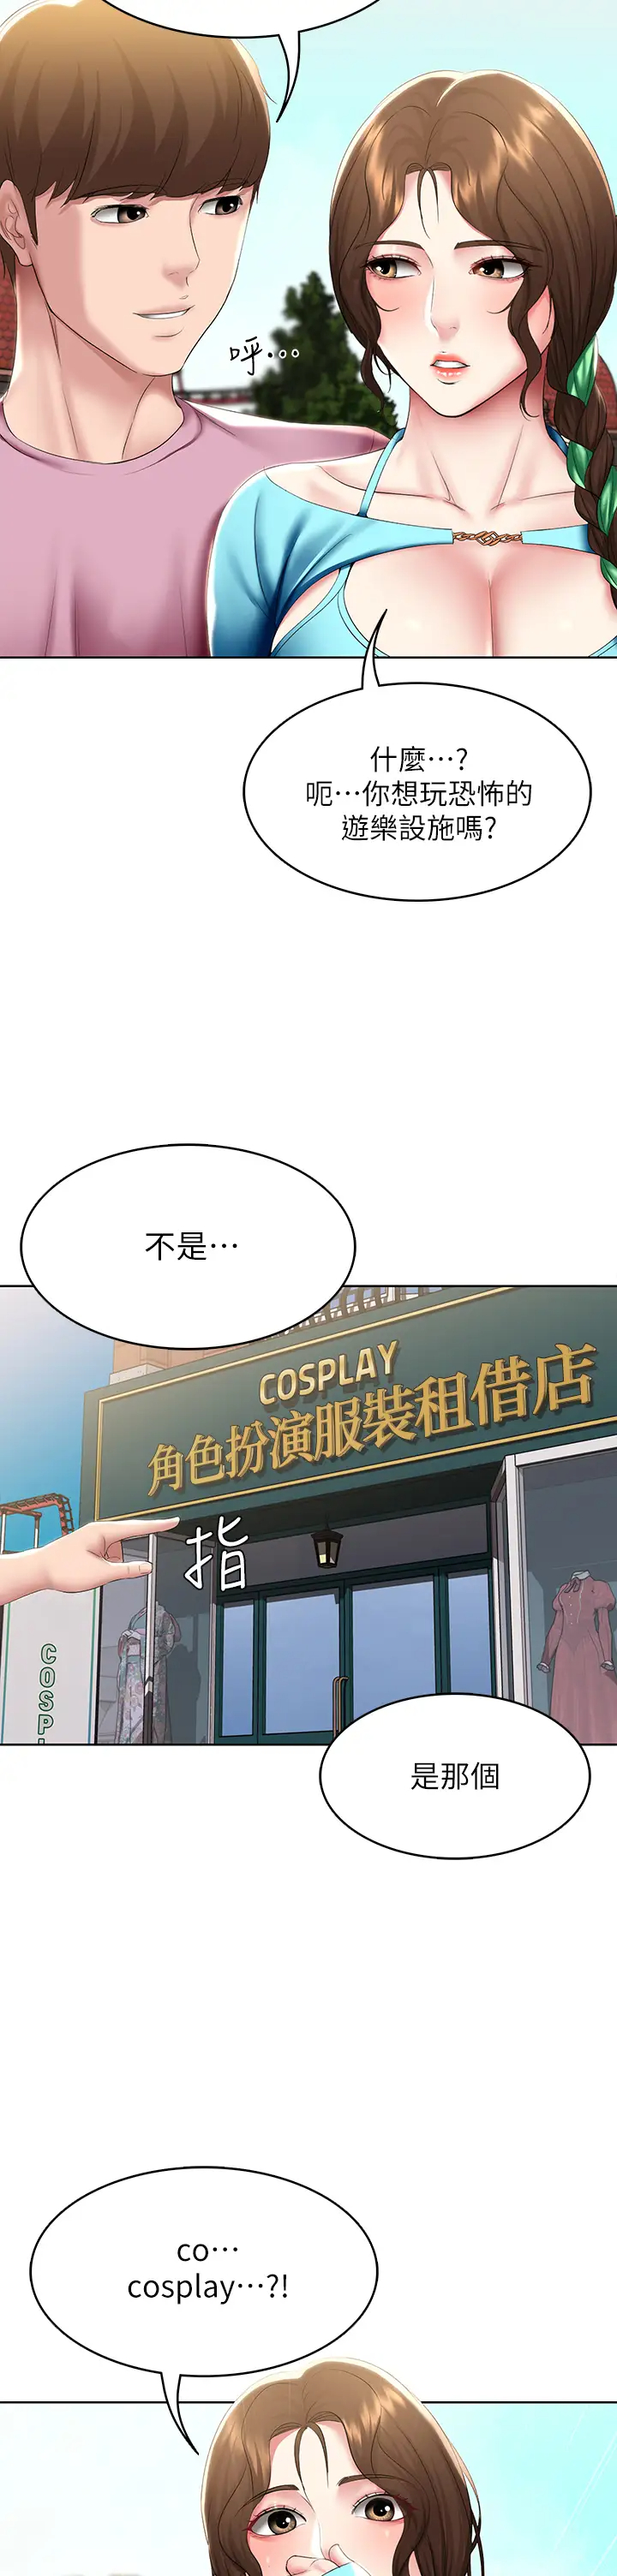 韩国污漫画 寄宿日記 第105话淫乱的cosplay约会 2